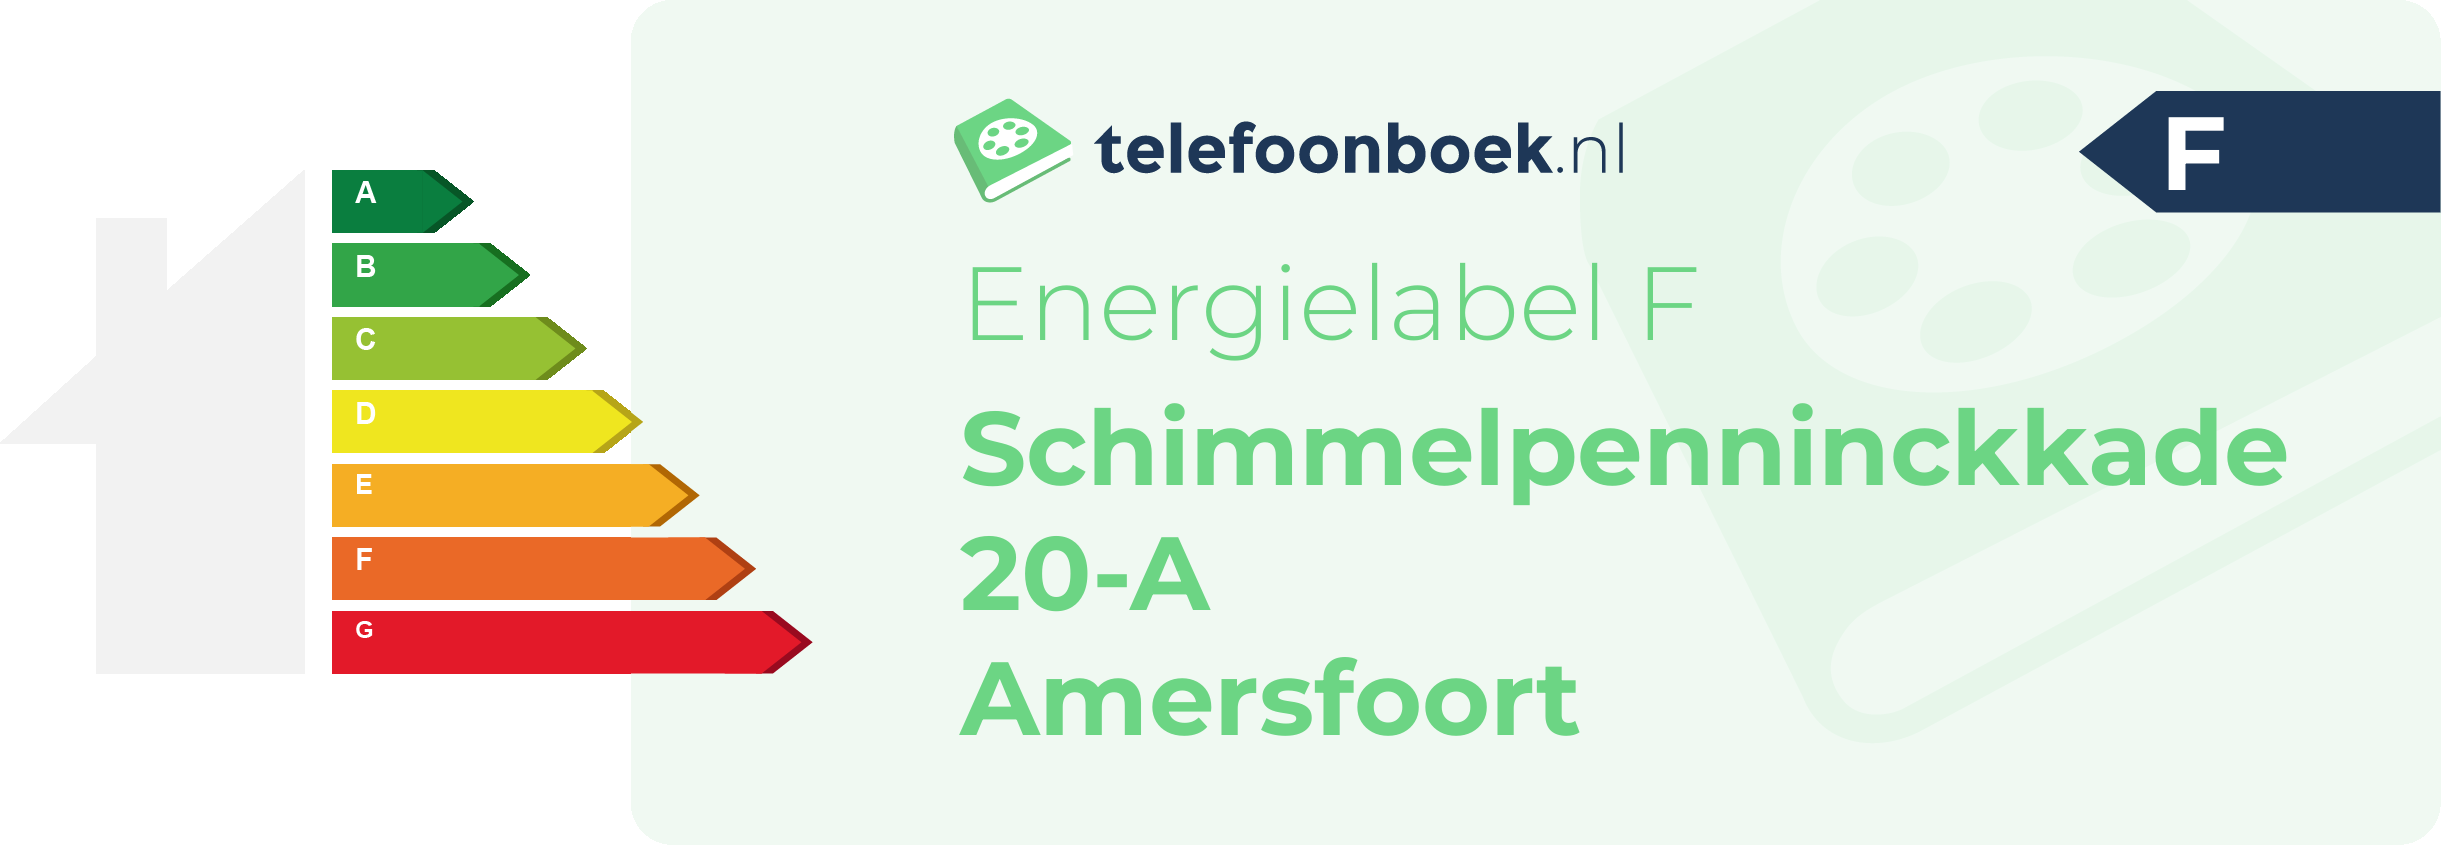 Energielabel Schimmelpenninckkade 20-A Amersfoort